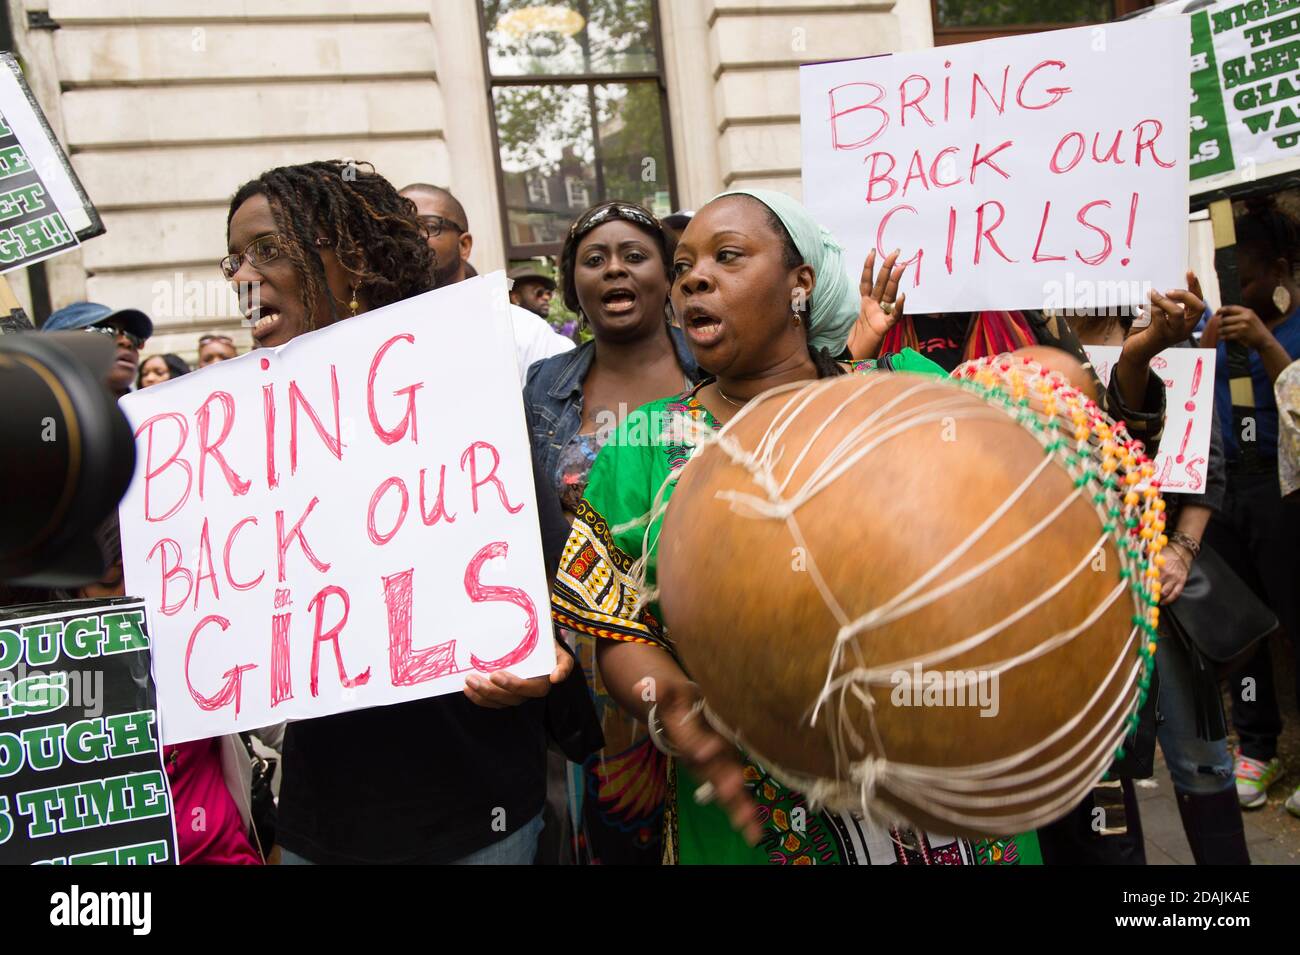 Demonstration vor der nigerianischen High Commission, London, die die Rückkehr der entführten Schülerinnen in Nigeria fordert. Mehr als 200 Schülerinnen wurden in der Nacht vom 14. Auf den 15. April 2014 von der staatlichen Sekundarschule in der Stadt Chibok im Bundesstaat Borno, Nigeria, entführt. Die Entführungen wurden von Boko Haram, einer islamisch-dschihadistischen Terrororganisation im Nordosten Nigerias, behauptet. Nigerianische hohe Kommission, London, Vereinigtes Königreich. 17 Mai 2014 Stockfoto